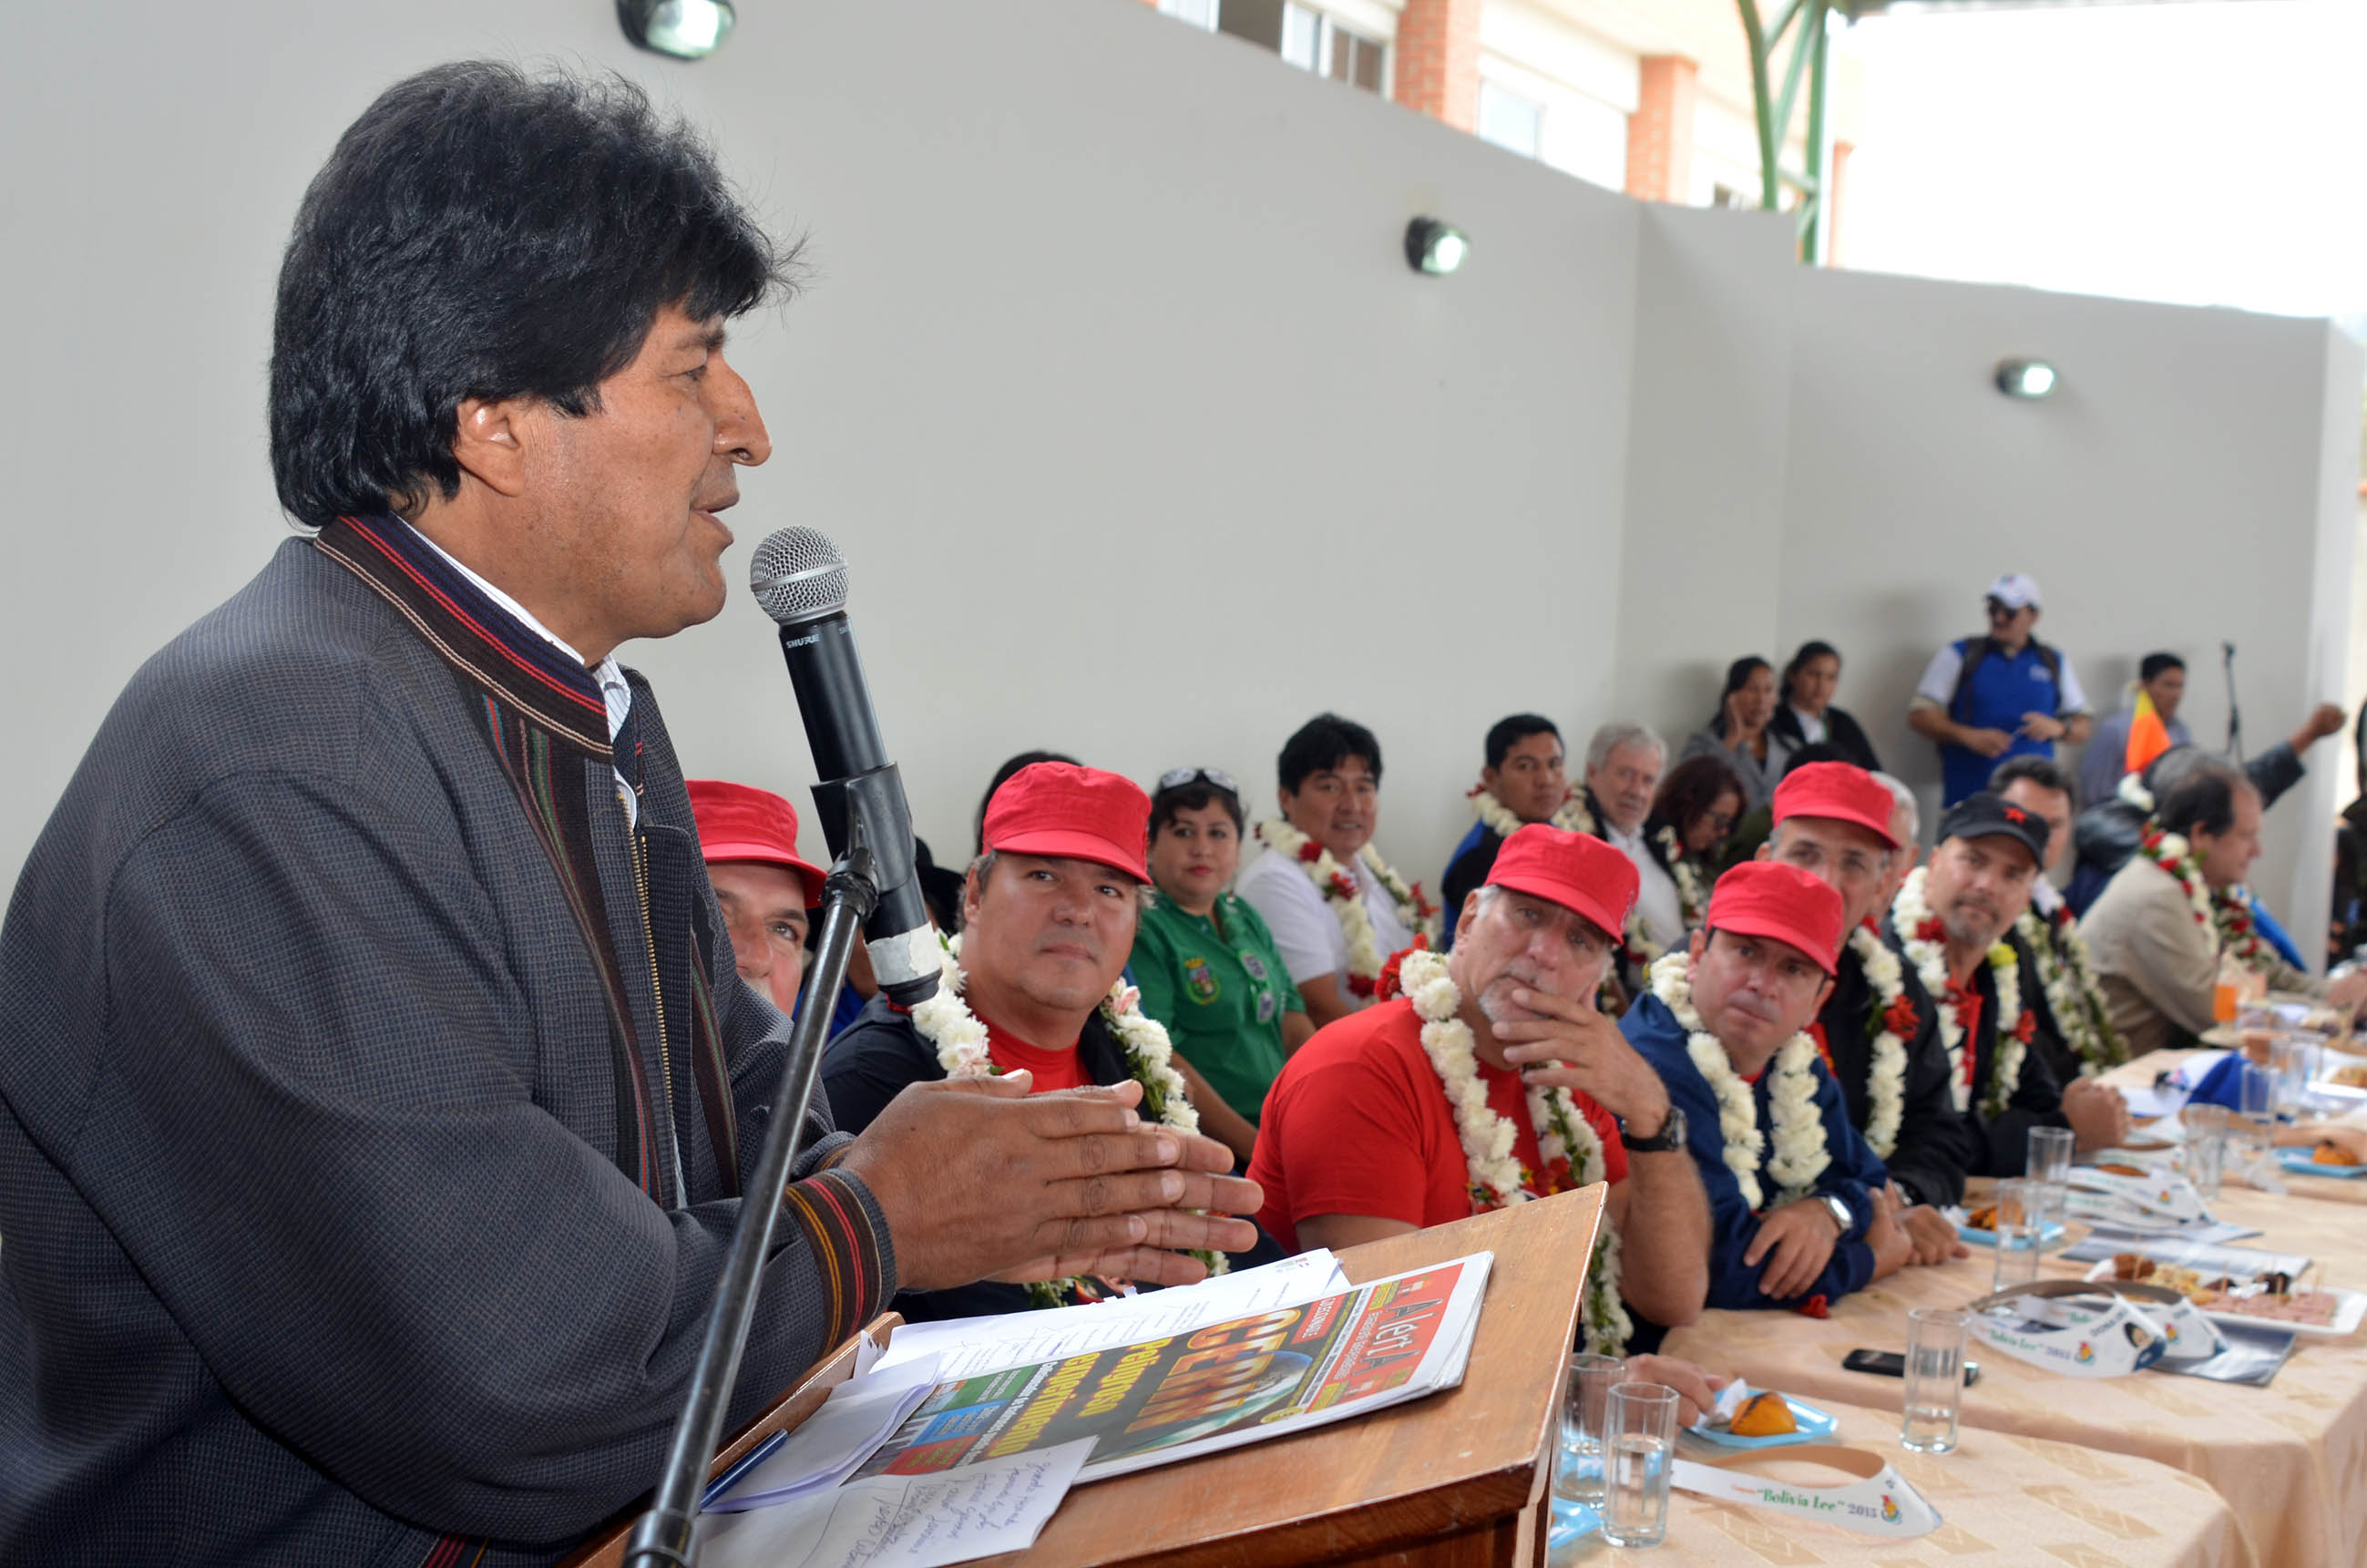 Morales espera que los movimientos sociales presenten propuestas para salvar el planeta.